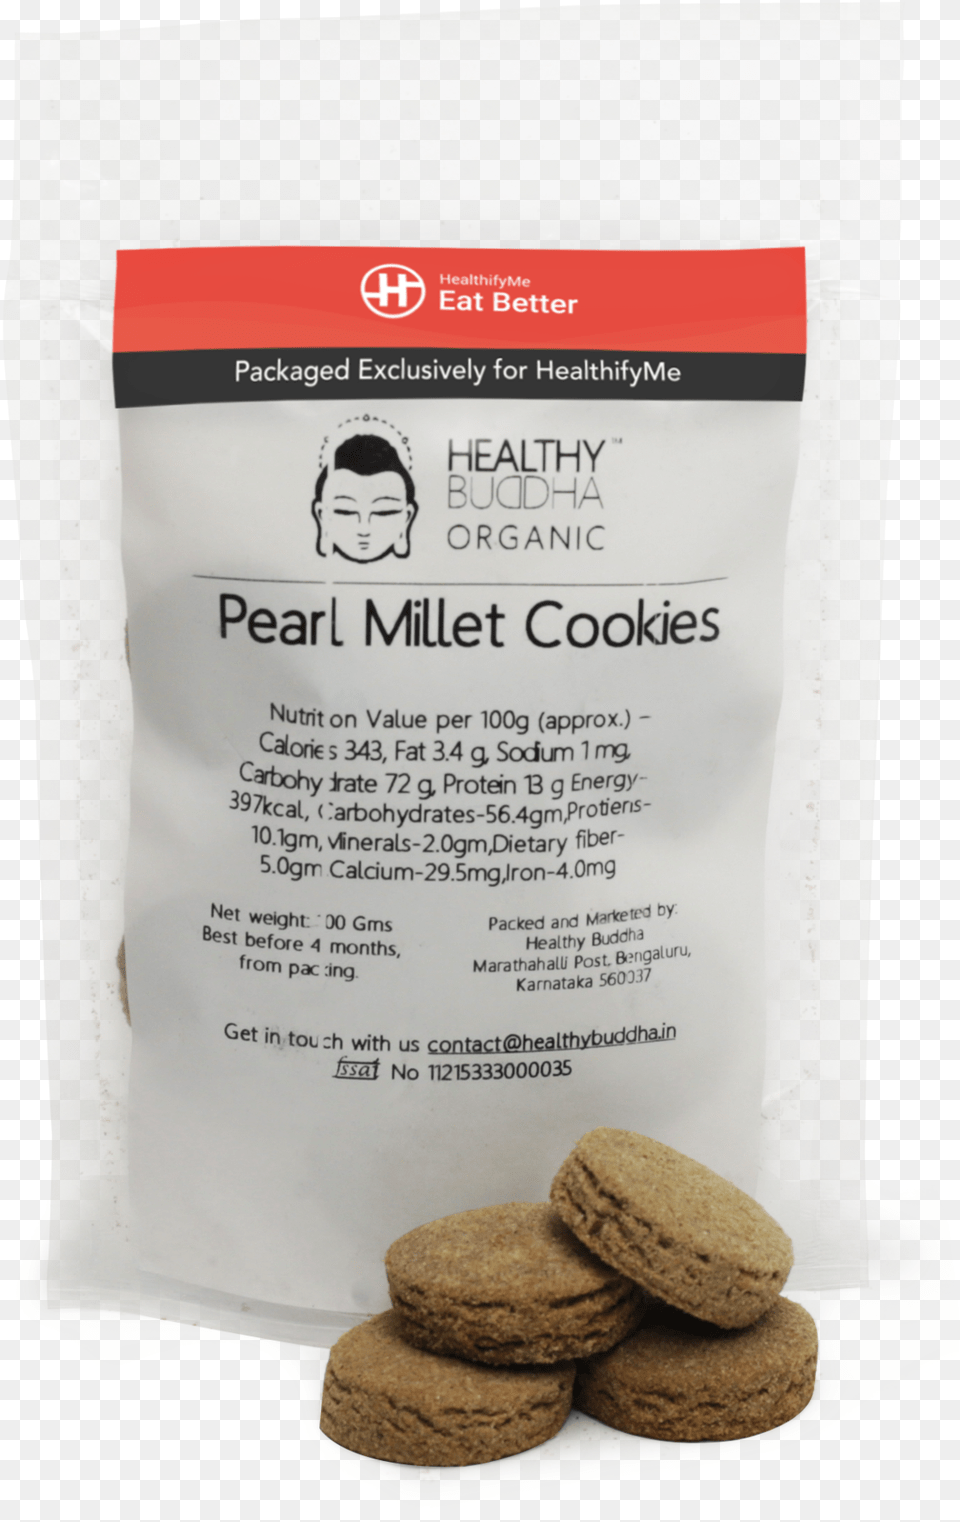 Pearl Millet Cookies Pack Of Sandwich Cookies, Food, Sweets, Face, Head Png